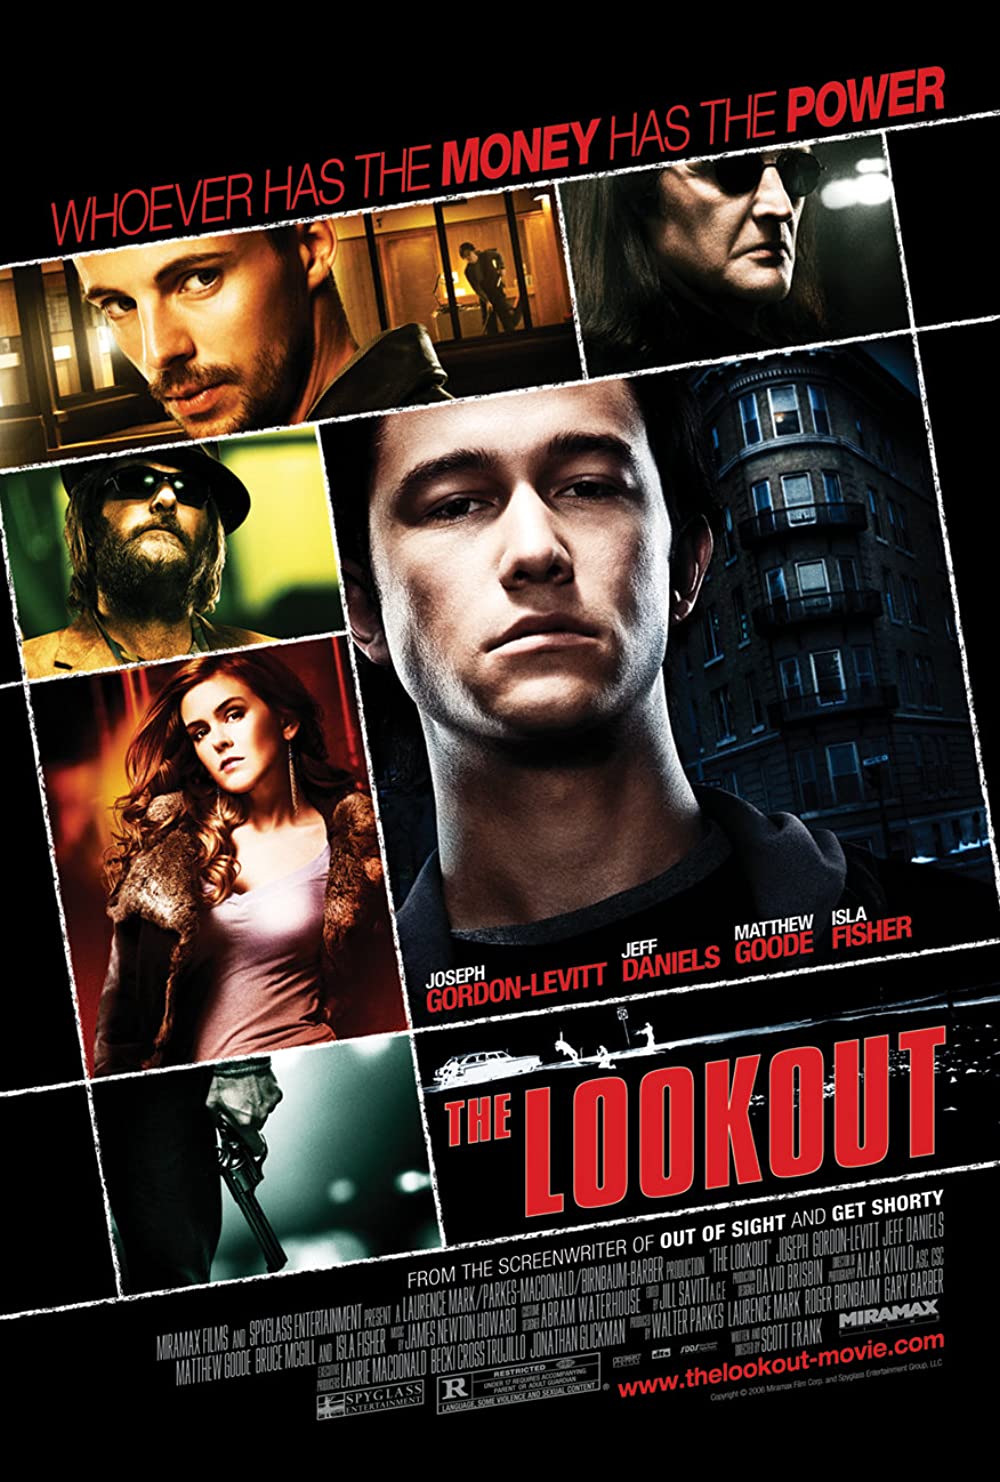 The Lookout 2007 ดับแผนปล้น ต้องชนนรก doomovie